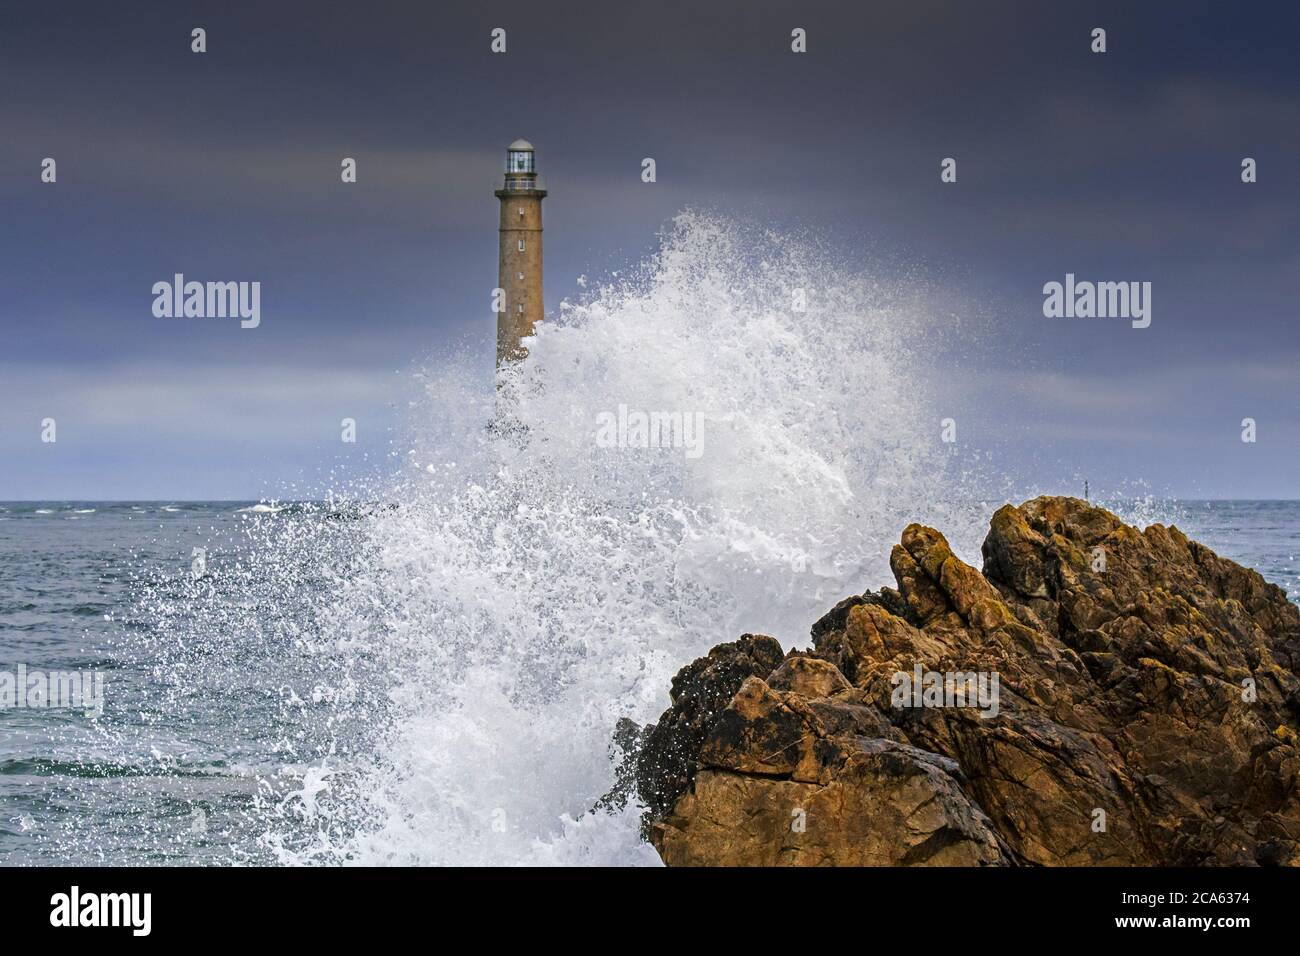 Les vagues s'écrasant sur le rocher et le phare Phare de la Hague / Phare de Goury près d'Auderville, Cap de la Hague, péninsule du Cotentin, Basse-Normandie, France Banque D'Images